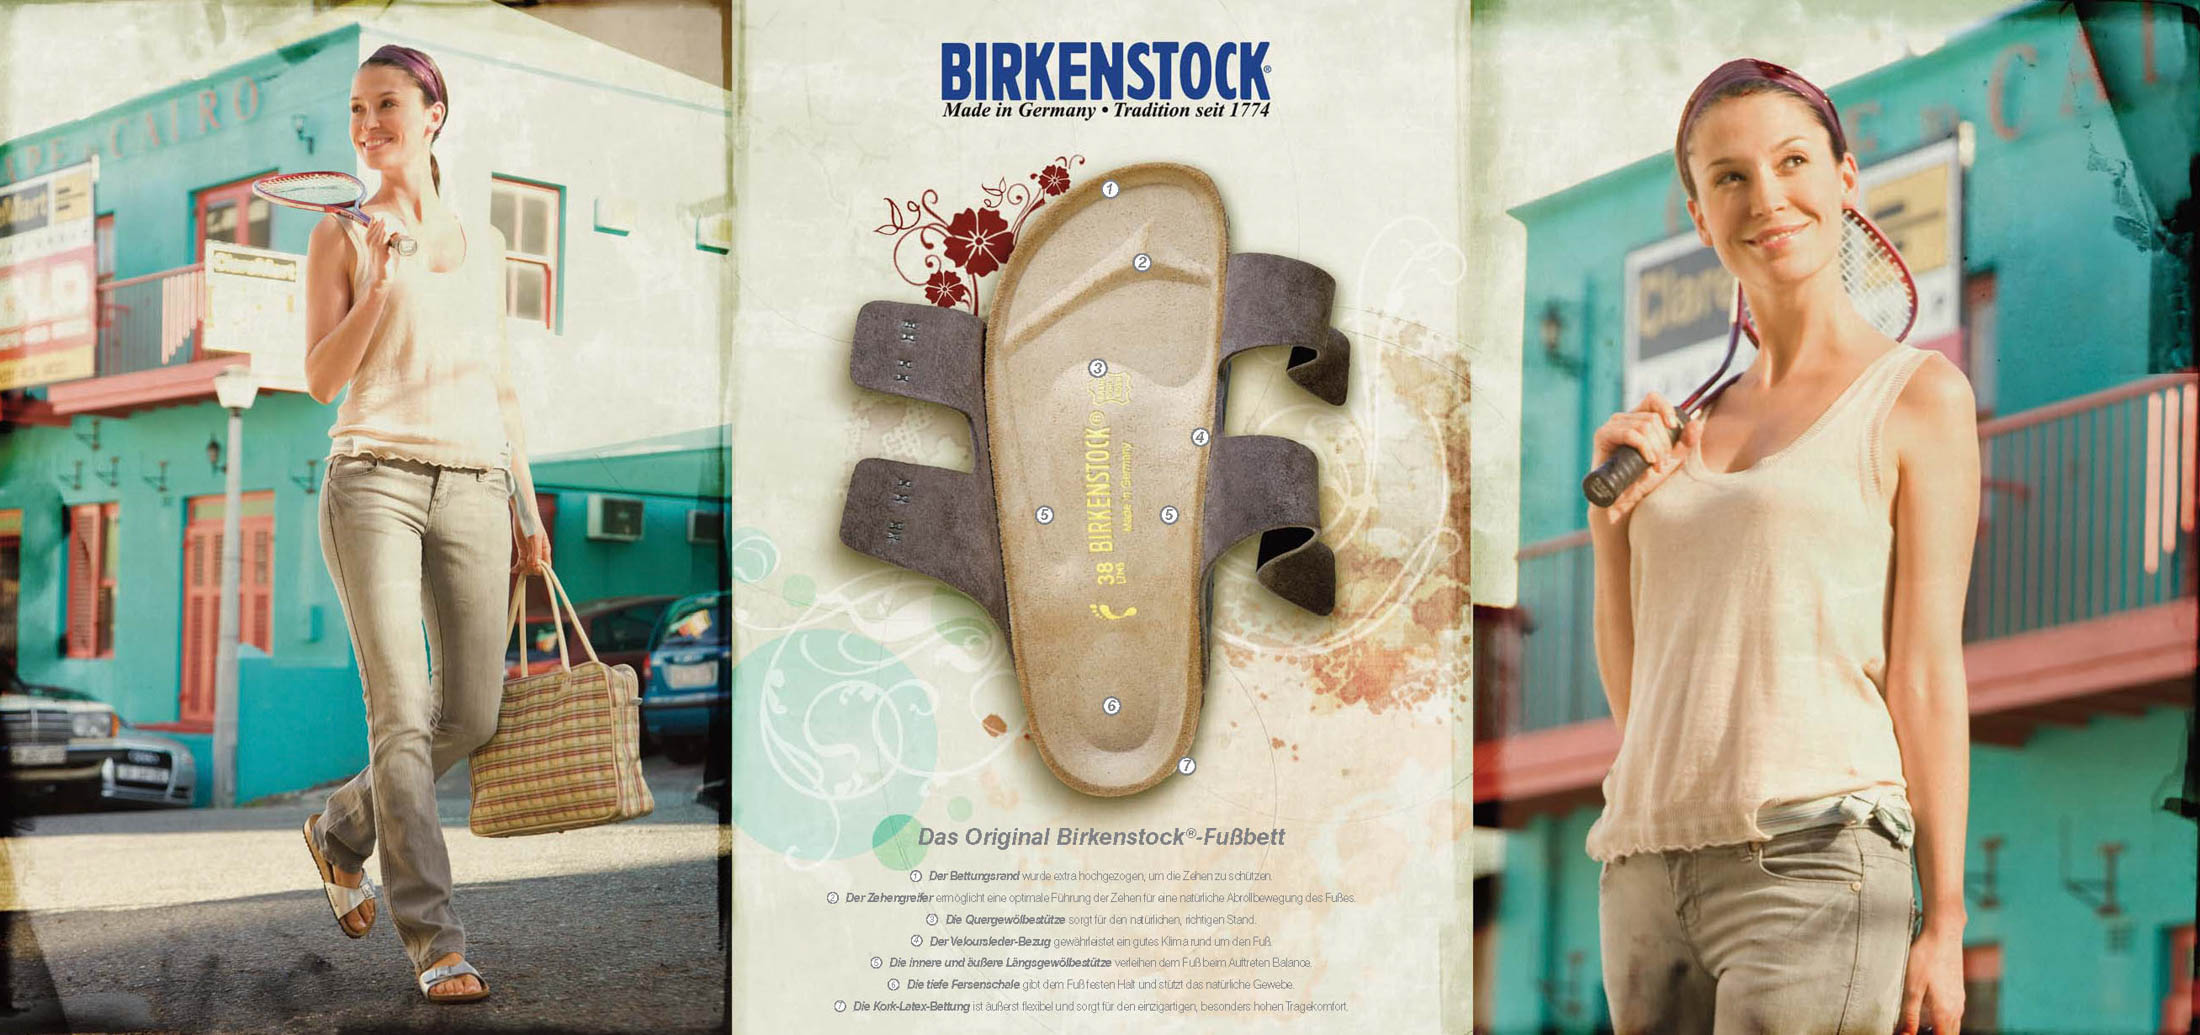 Werbung für Birkenstock-Sandalen mit einer lächelnden Frau, die durch eine städtische Umgebung geht und Bücher trägt. In der Mitte ist eine Sandale abgebildet. Der Text beschreibt die Eigenschaften der Sandale auf Deutsch. © Fotografie Tomas Rodriguez